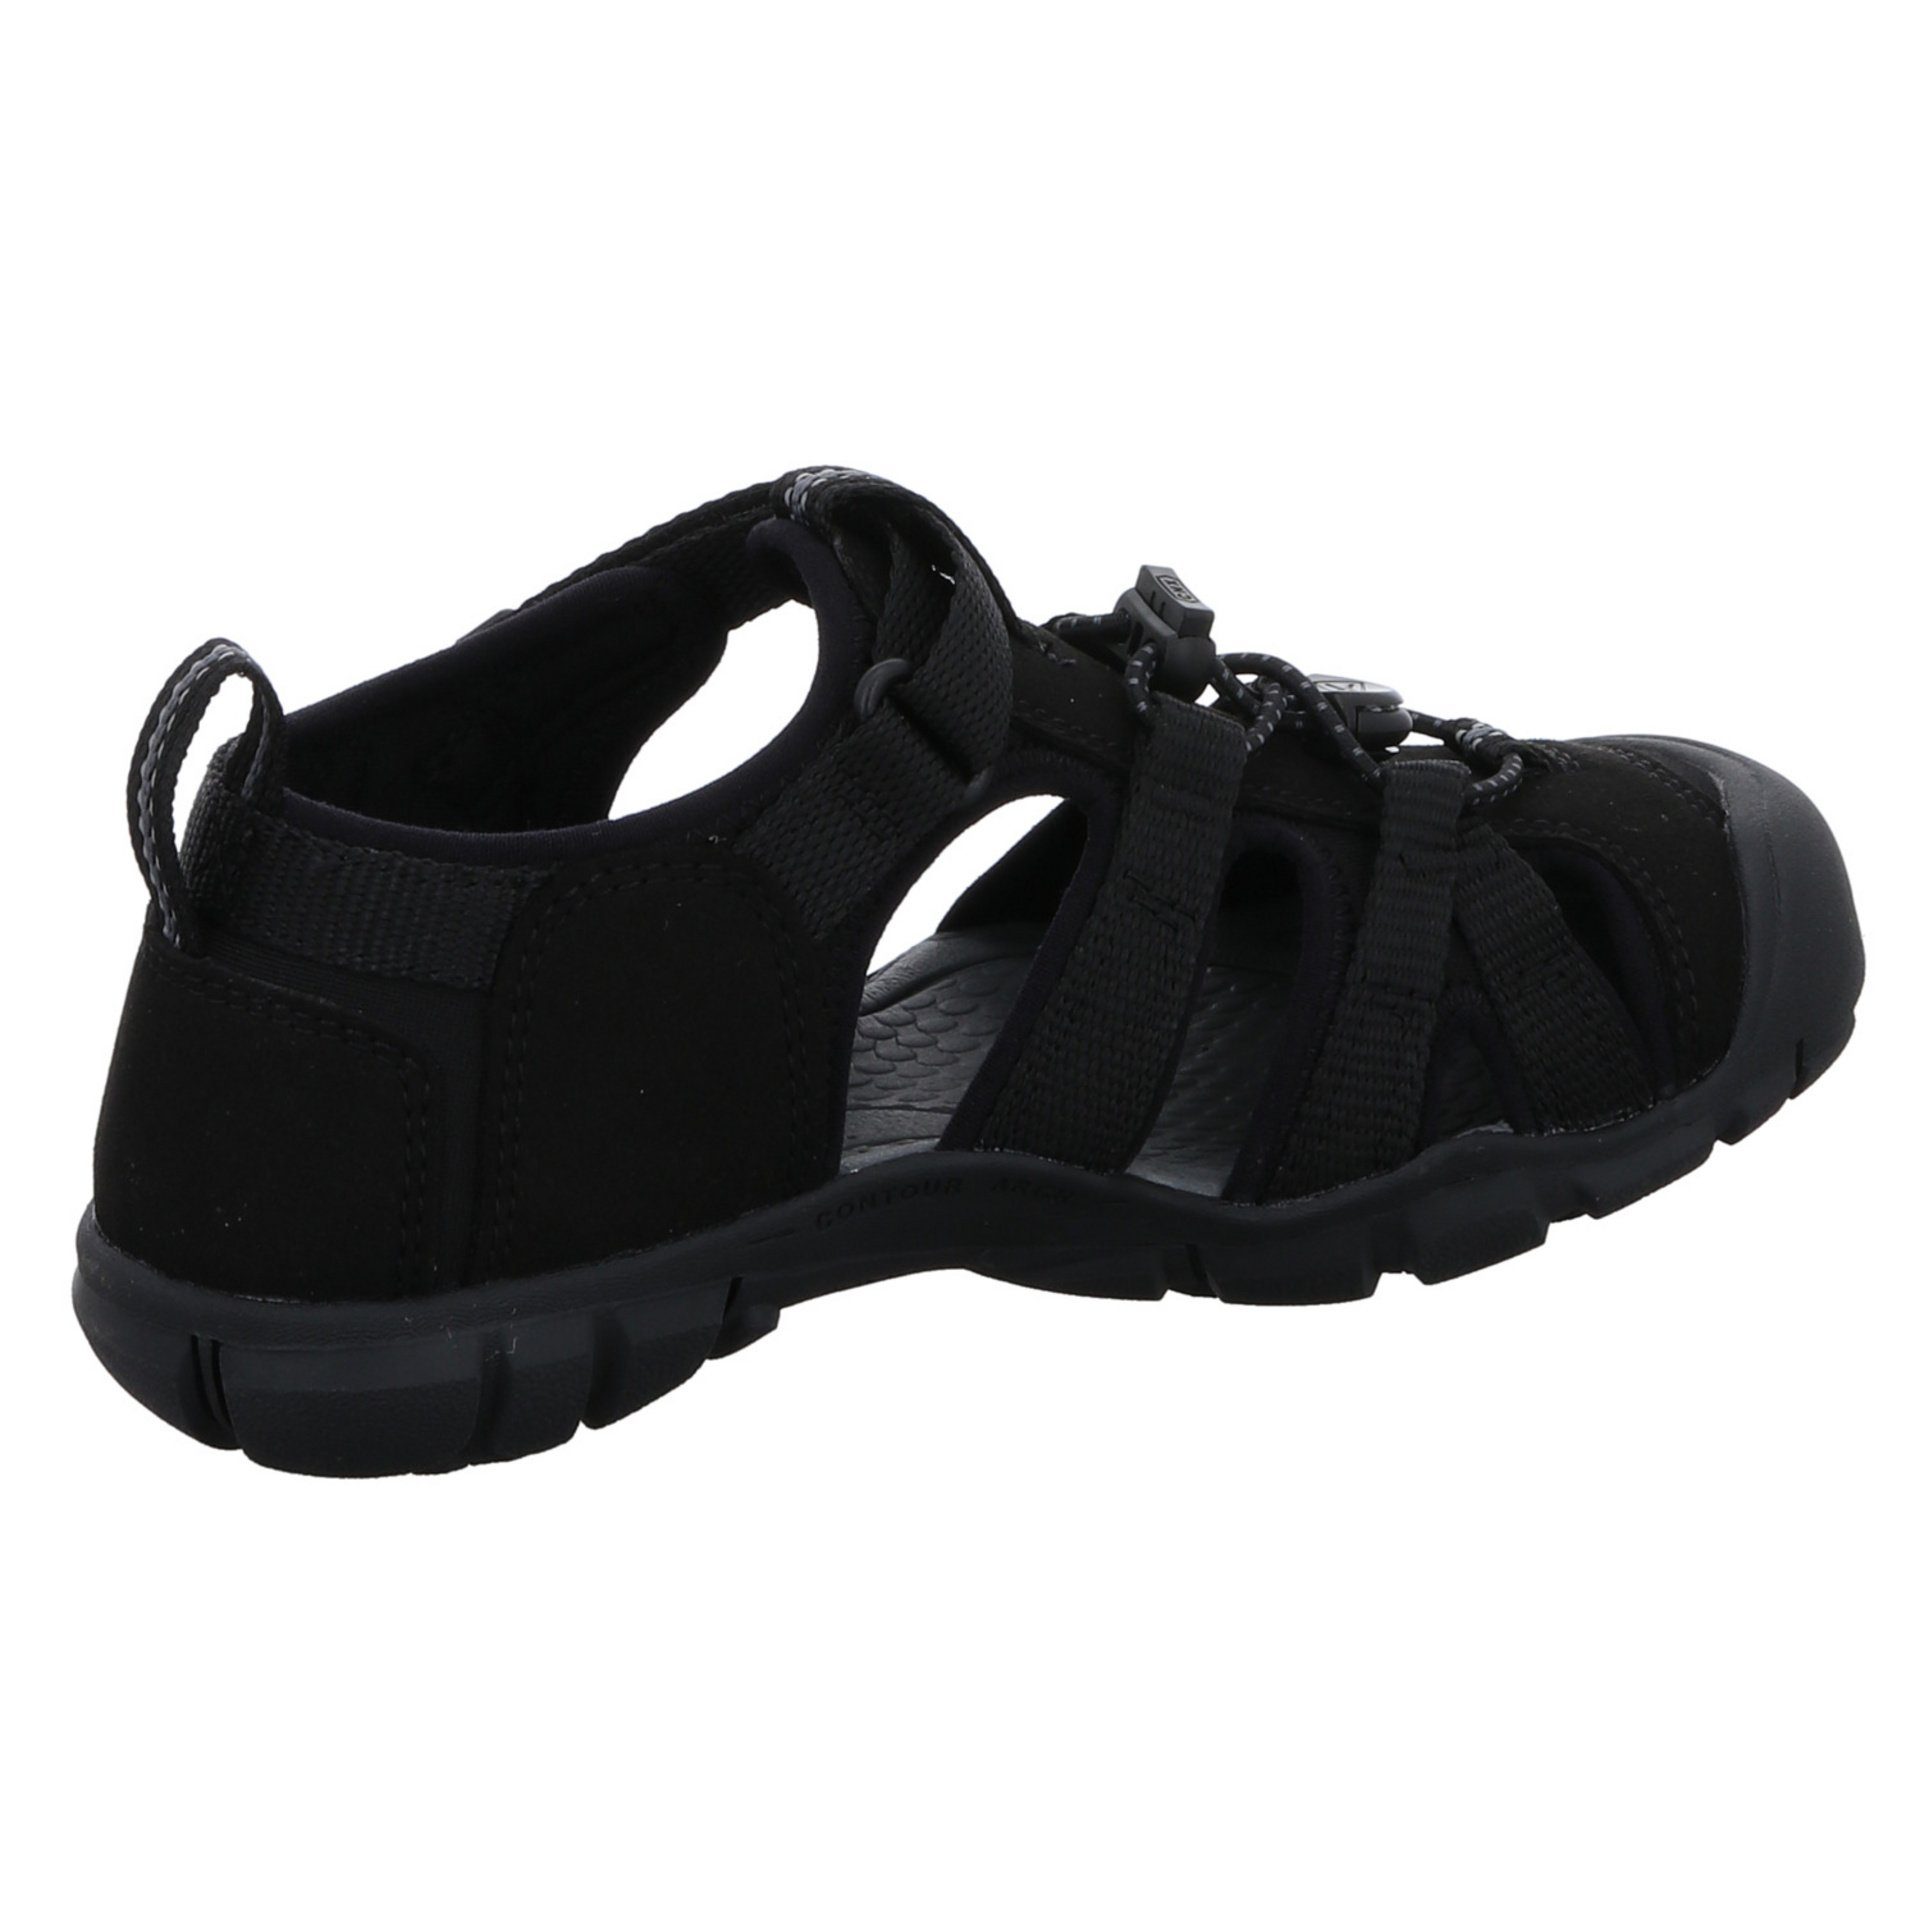 Keen Jungen Sandalen Schuhe Textil schwarz Sandale dunkel